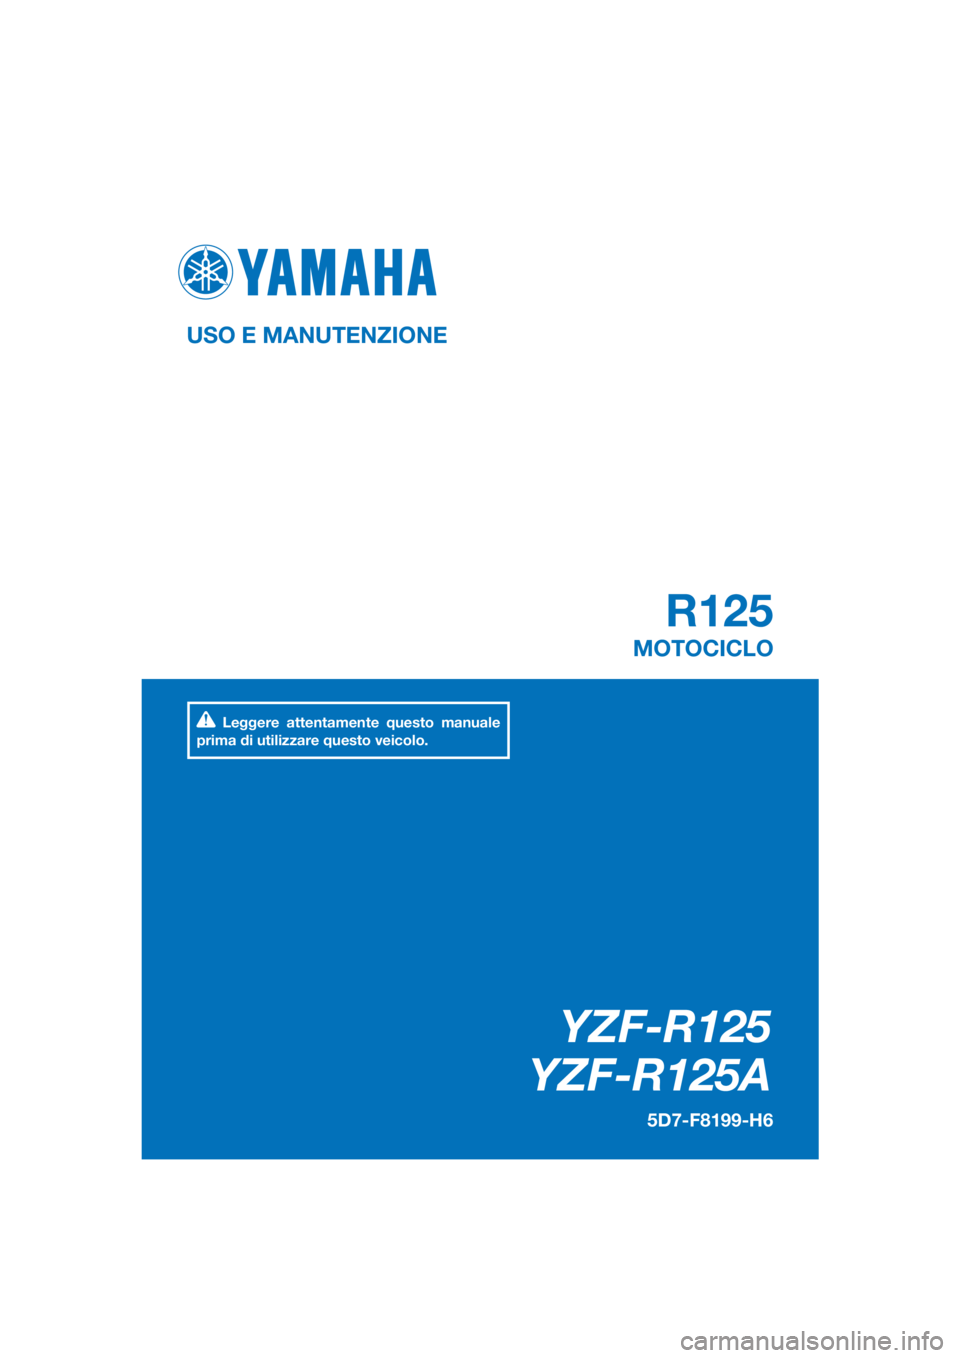 YAMAHA YZF-R125 2016  Manuale duso (in Italian) PANTONE285C
YZF-R125
YZF-R125A
R125
USO E MANUTENZIONE
5D7-F8199-H6
MOTOCICLO
Leggere attentamente questo manuale 
prima di utilizzare questo veicolo.
[Italian  (H)] 